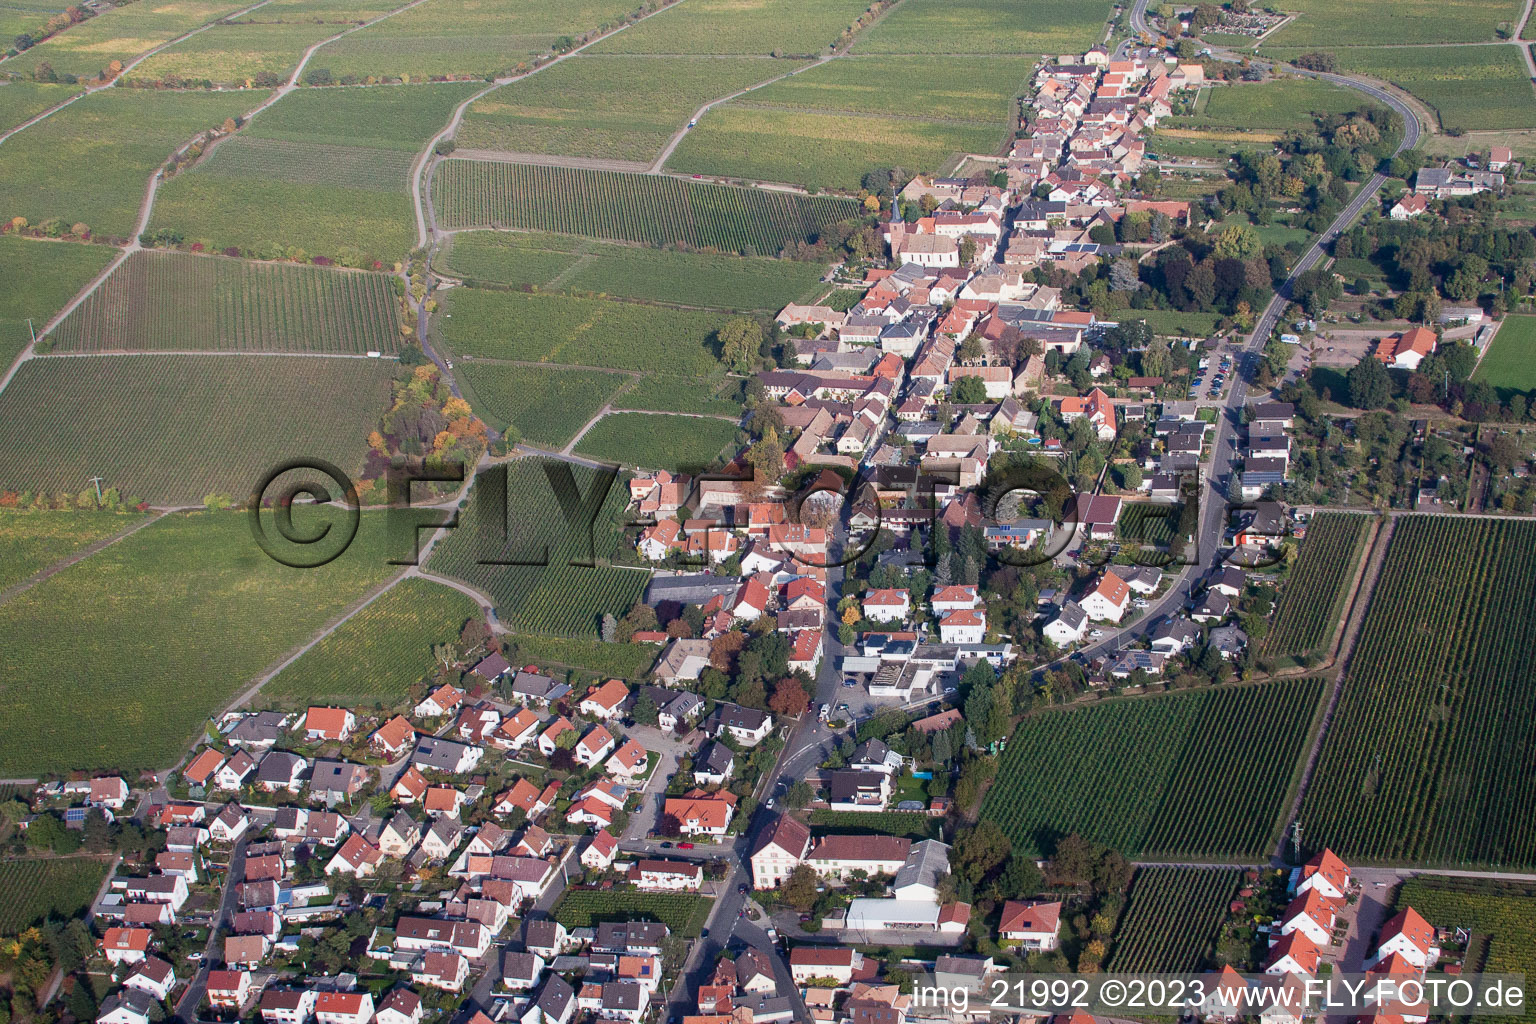 Deidesheim im Bundesland Rheinland-Pfalz, Deutschland von der Drohne aus gesehen